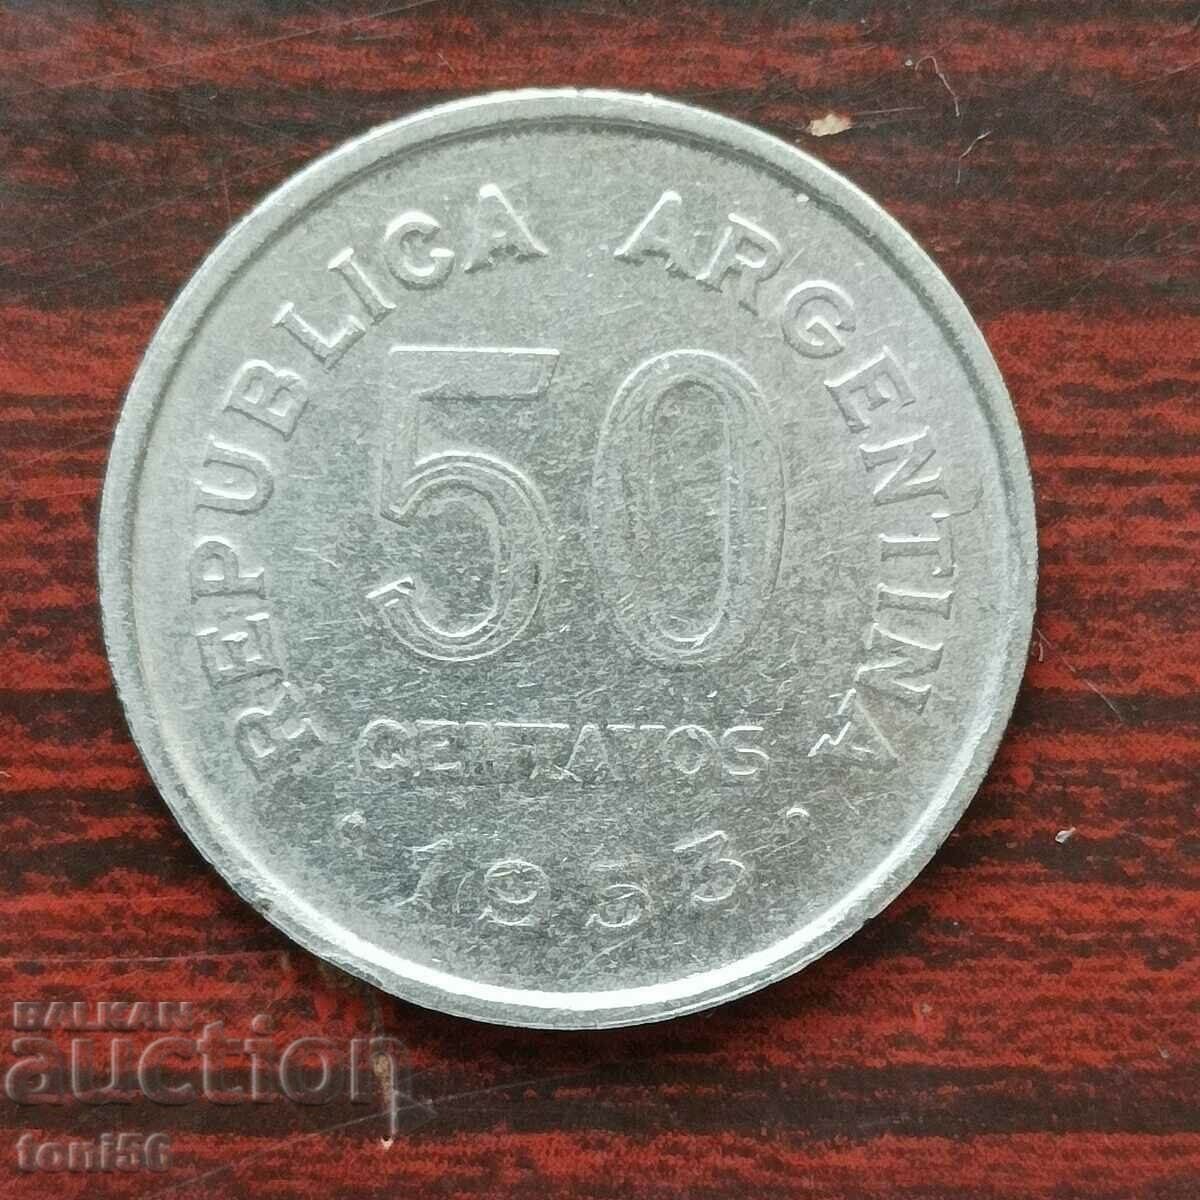 Argentina 50 centavos 1953